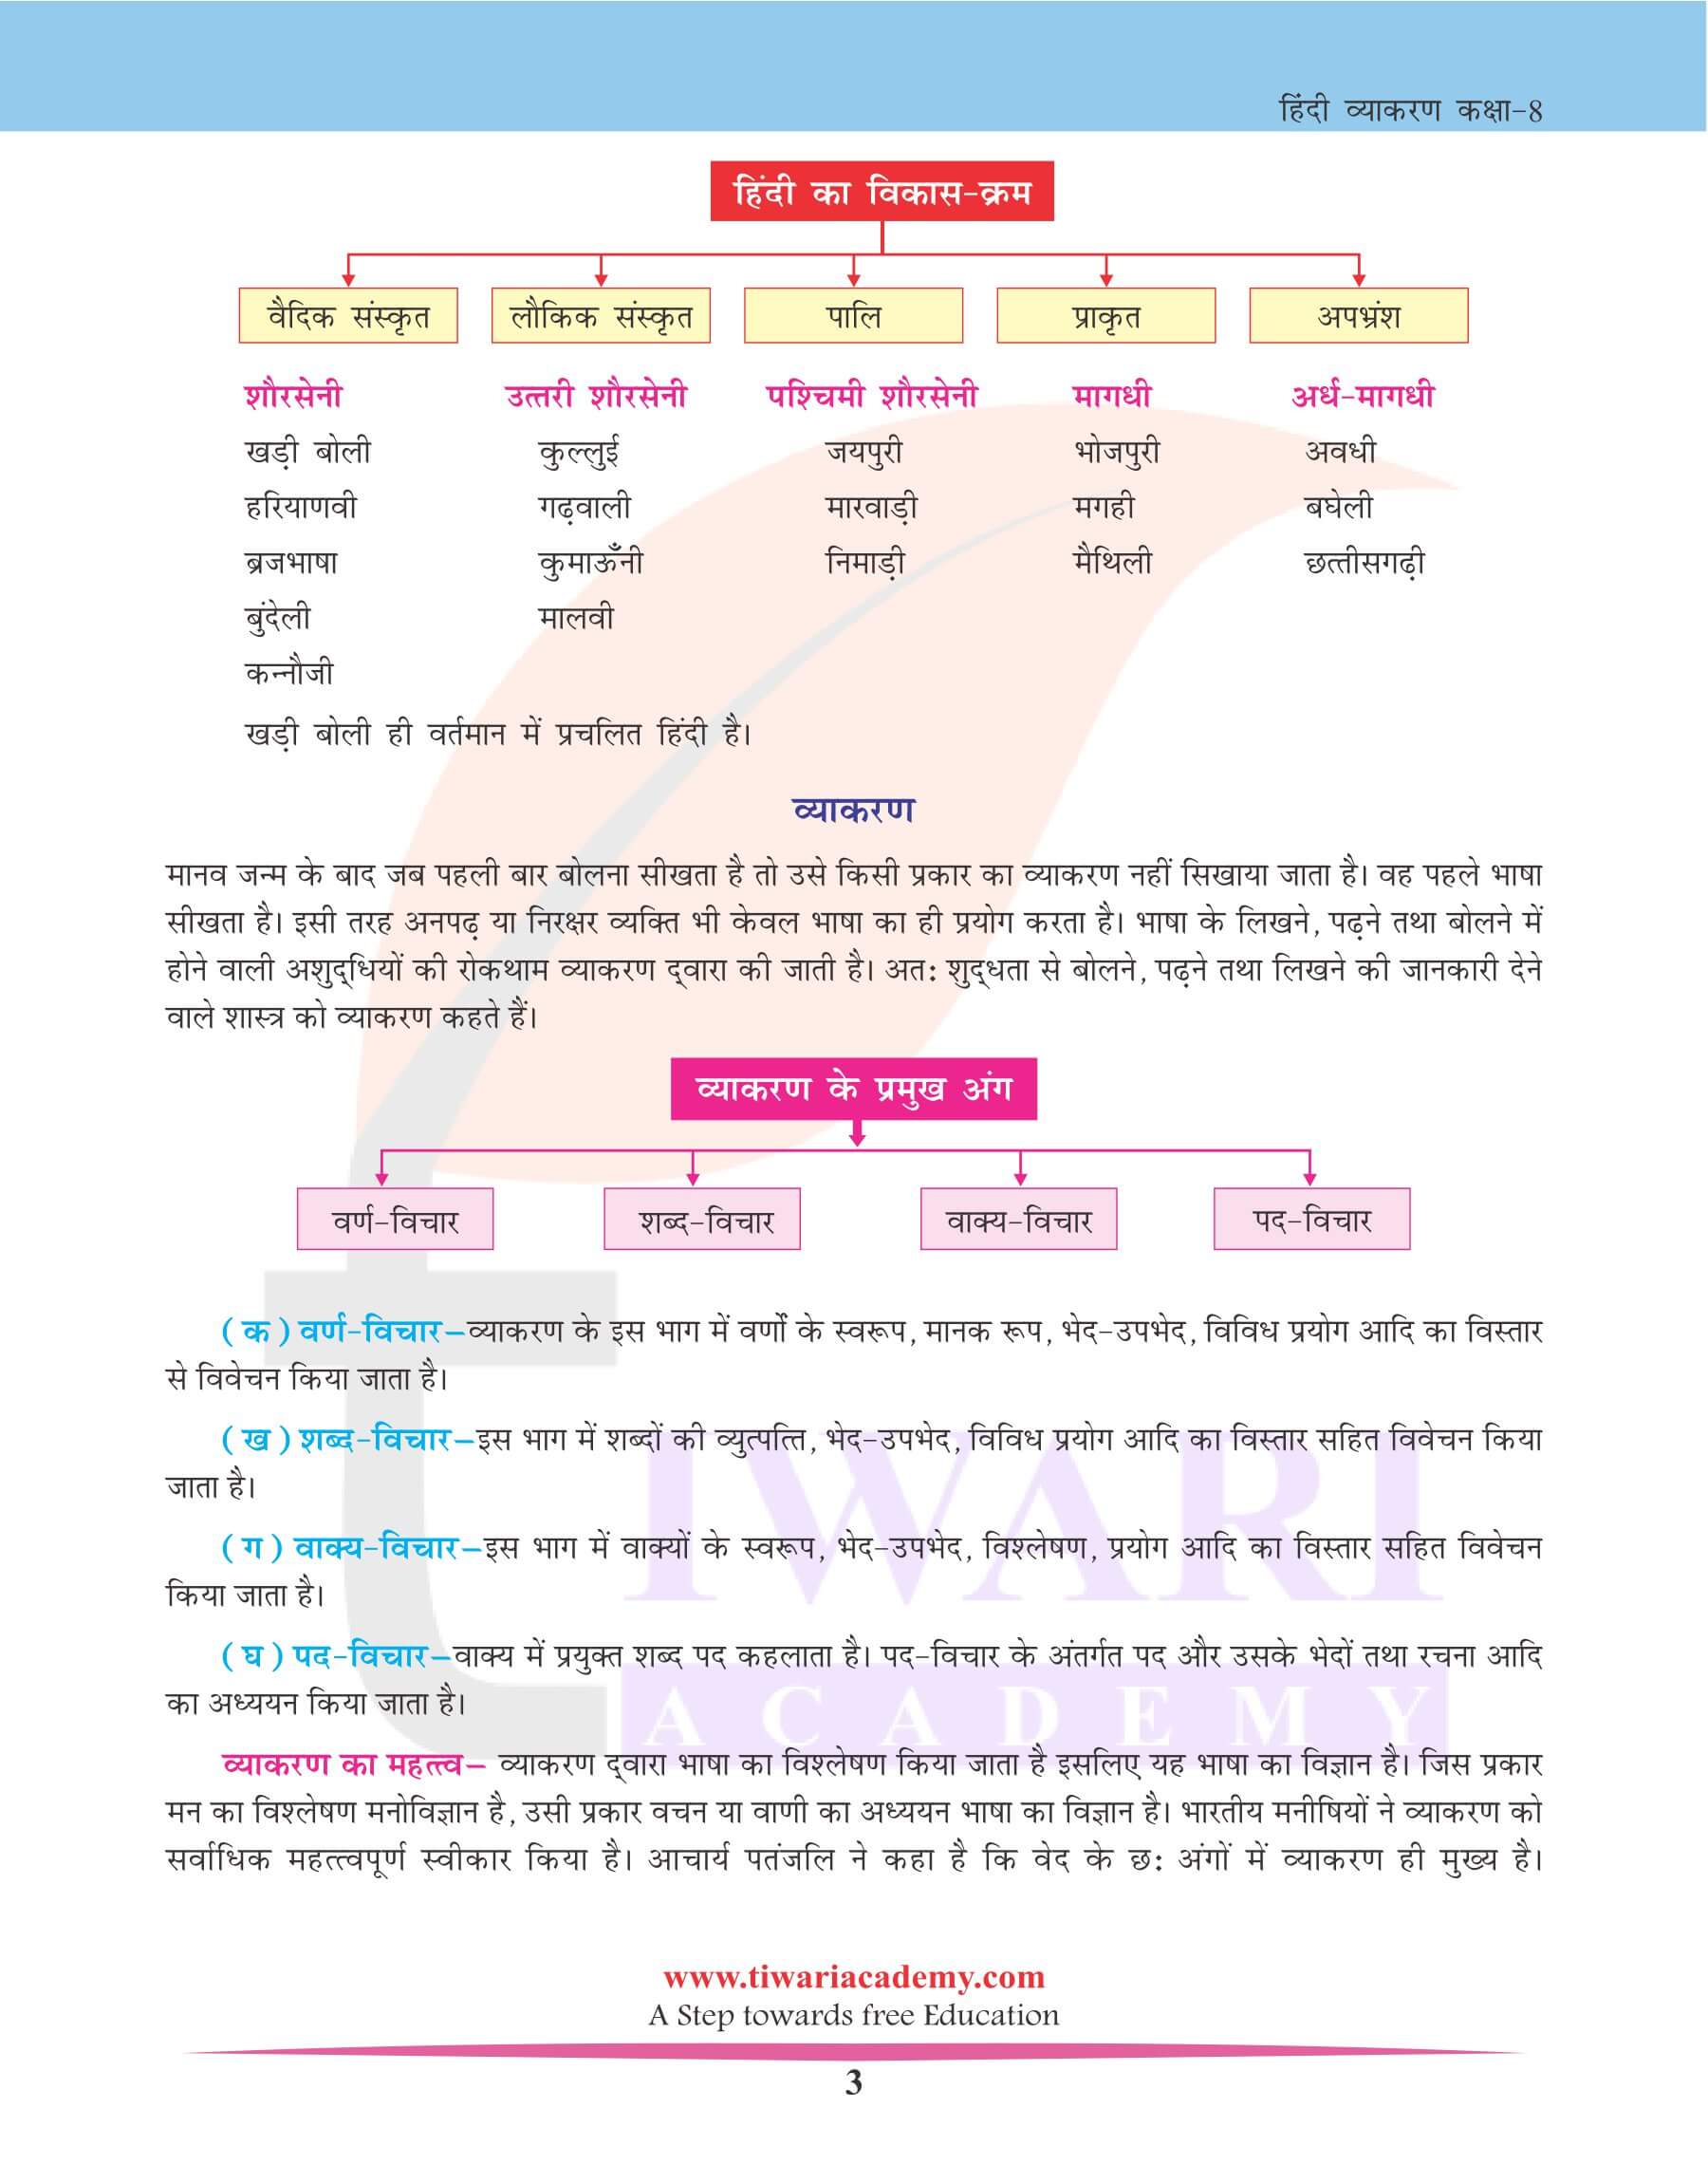 कक्षा 8 हिंदी व्याकरण अध्याय 1 भाषा